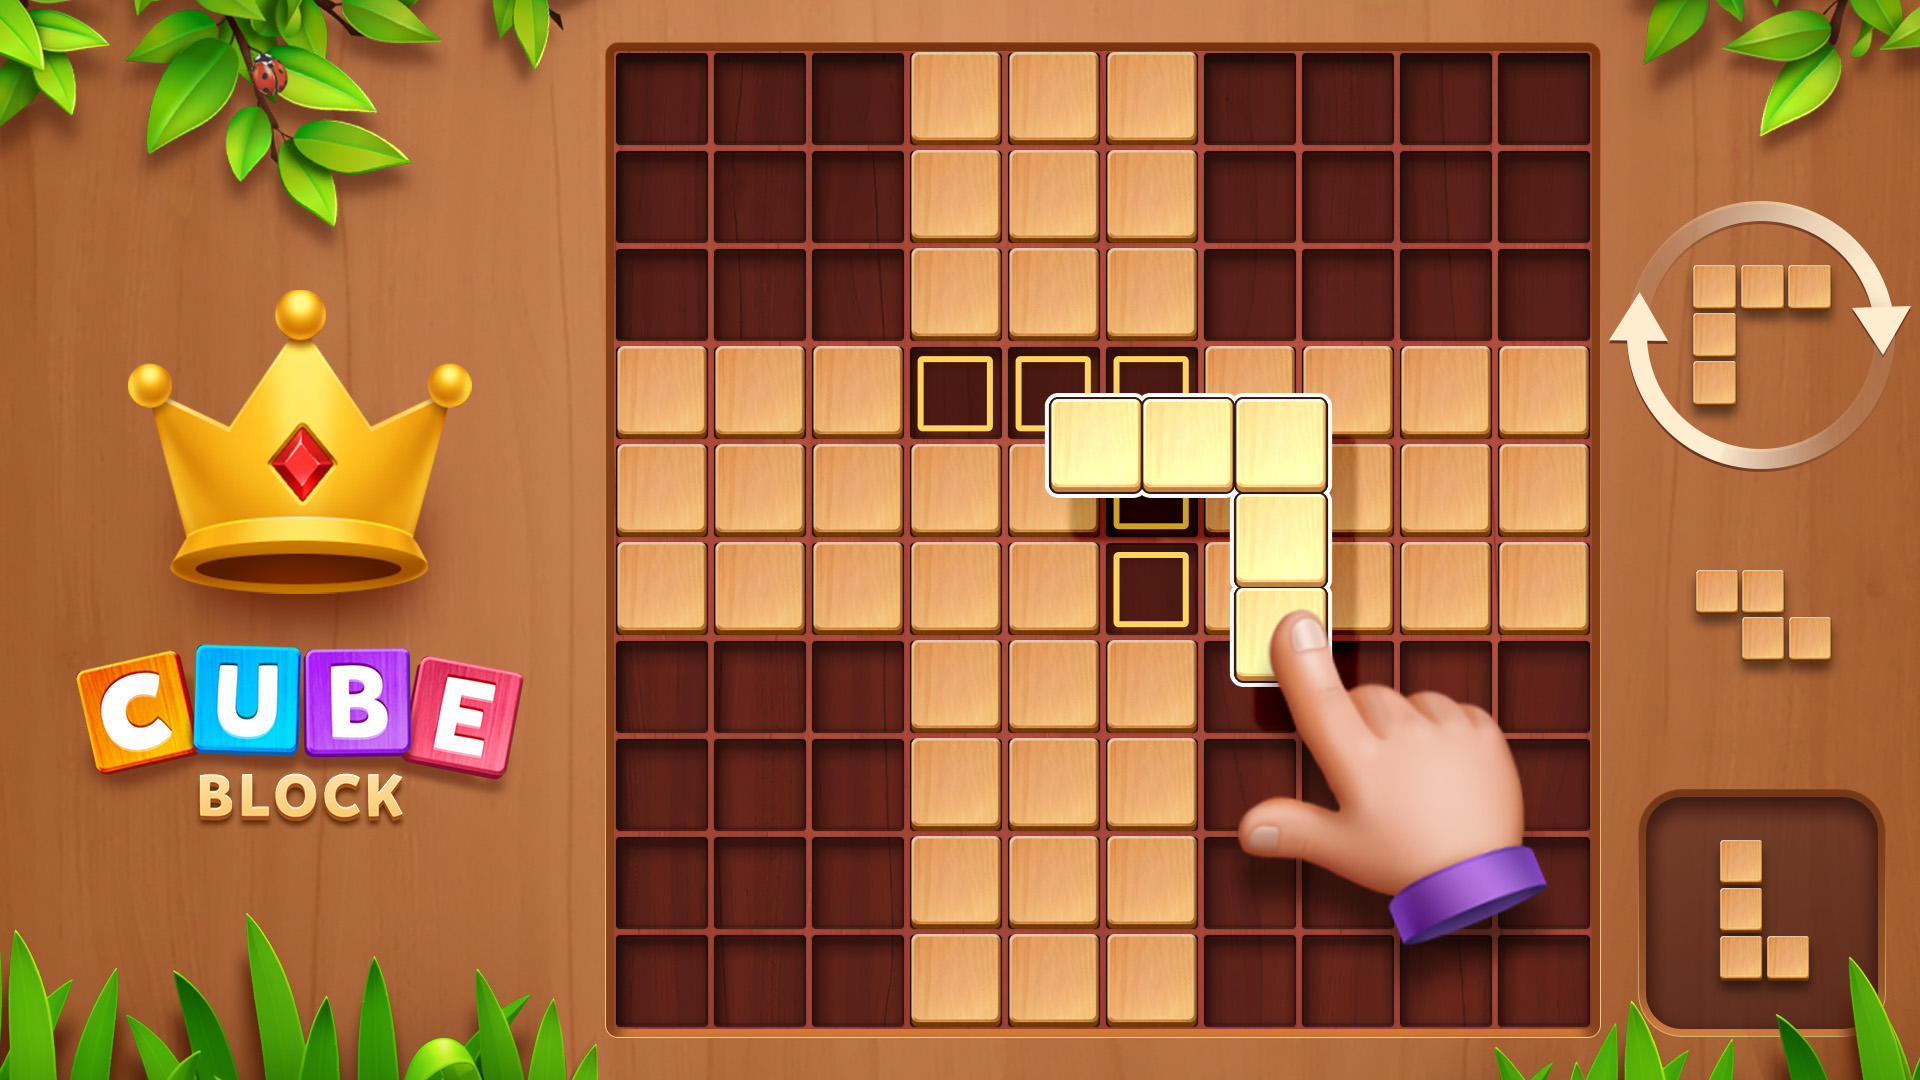 Cube Block - ウッディーパズルゲームのキャプチャ